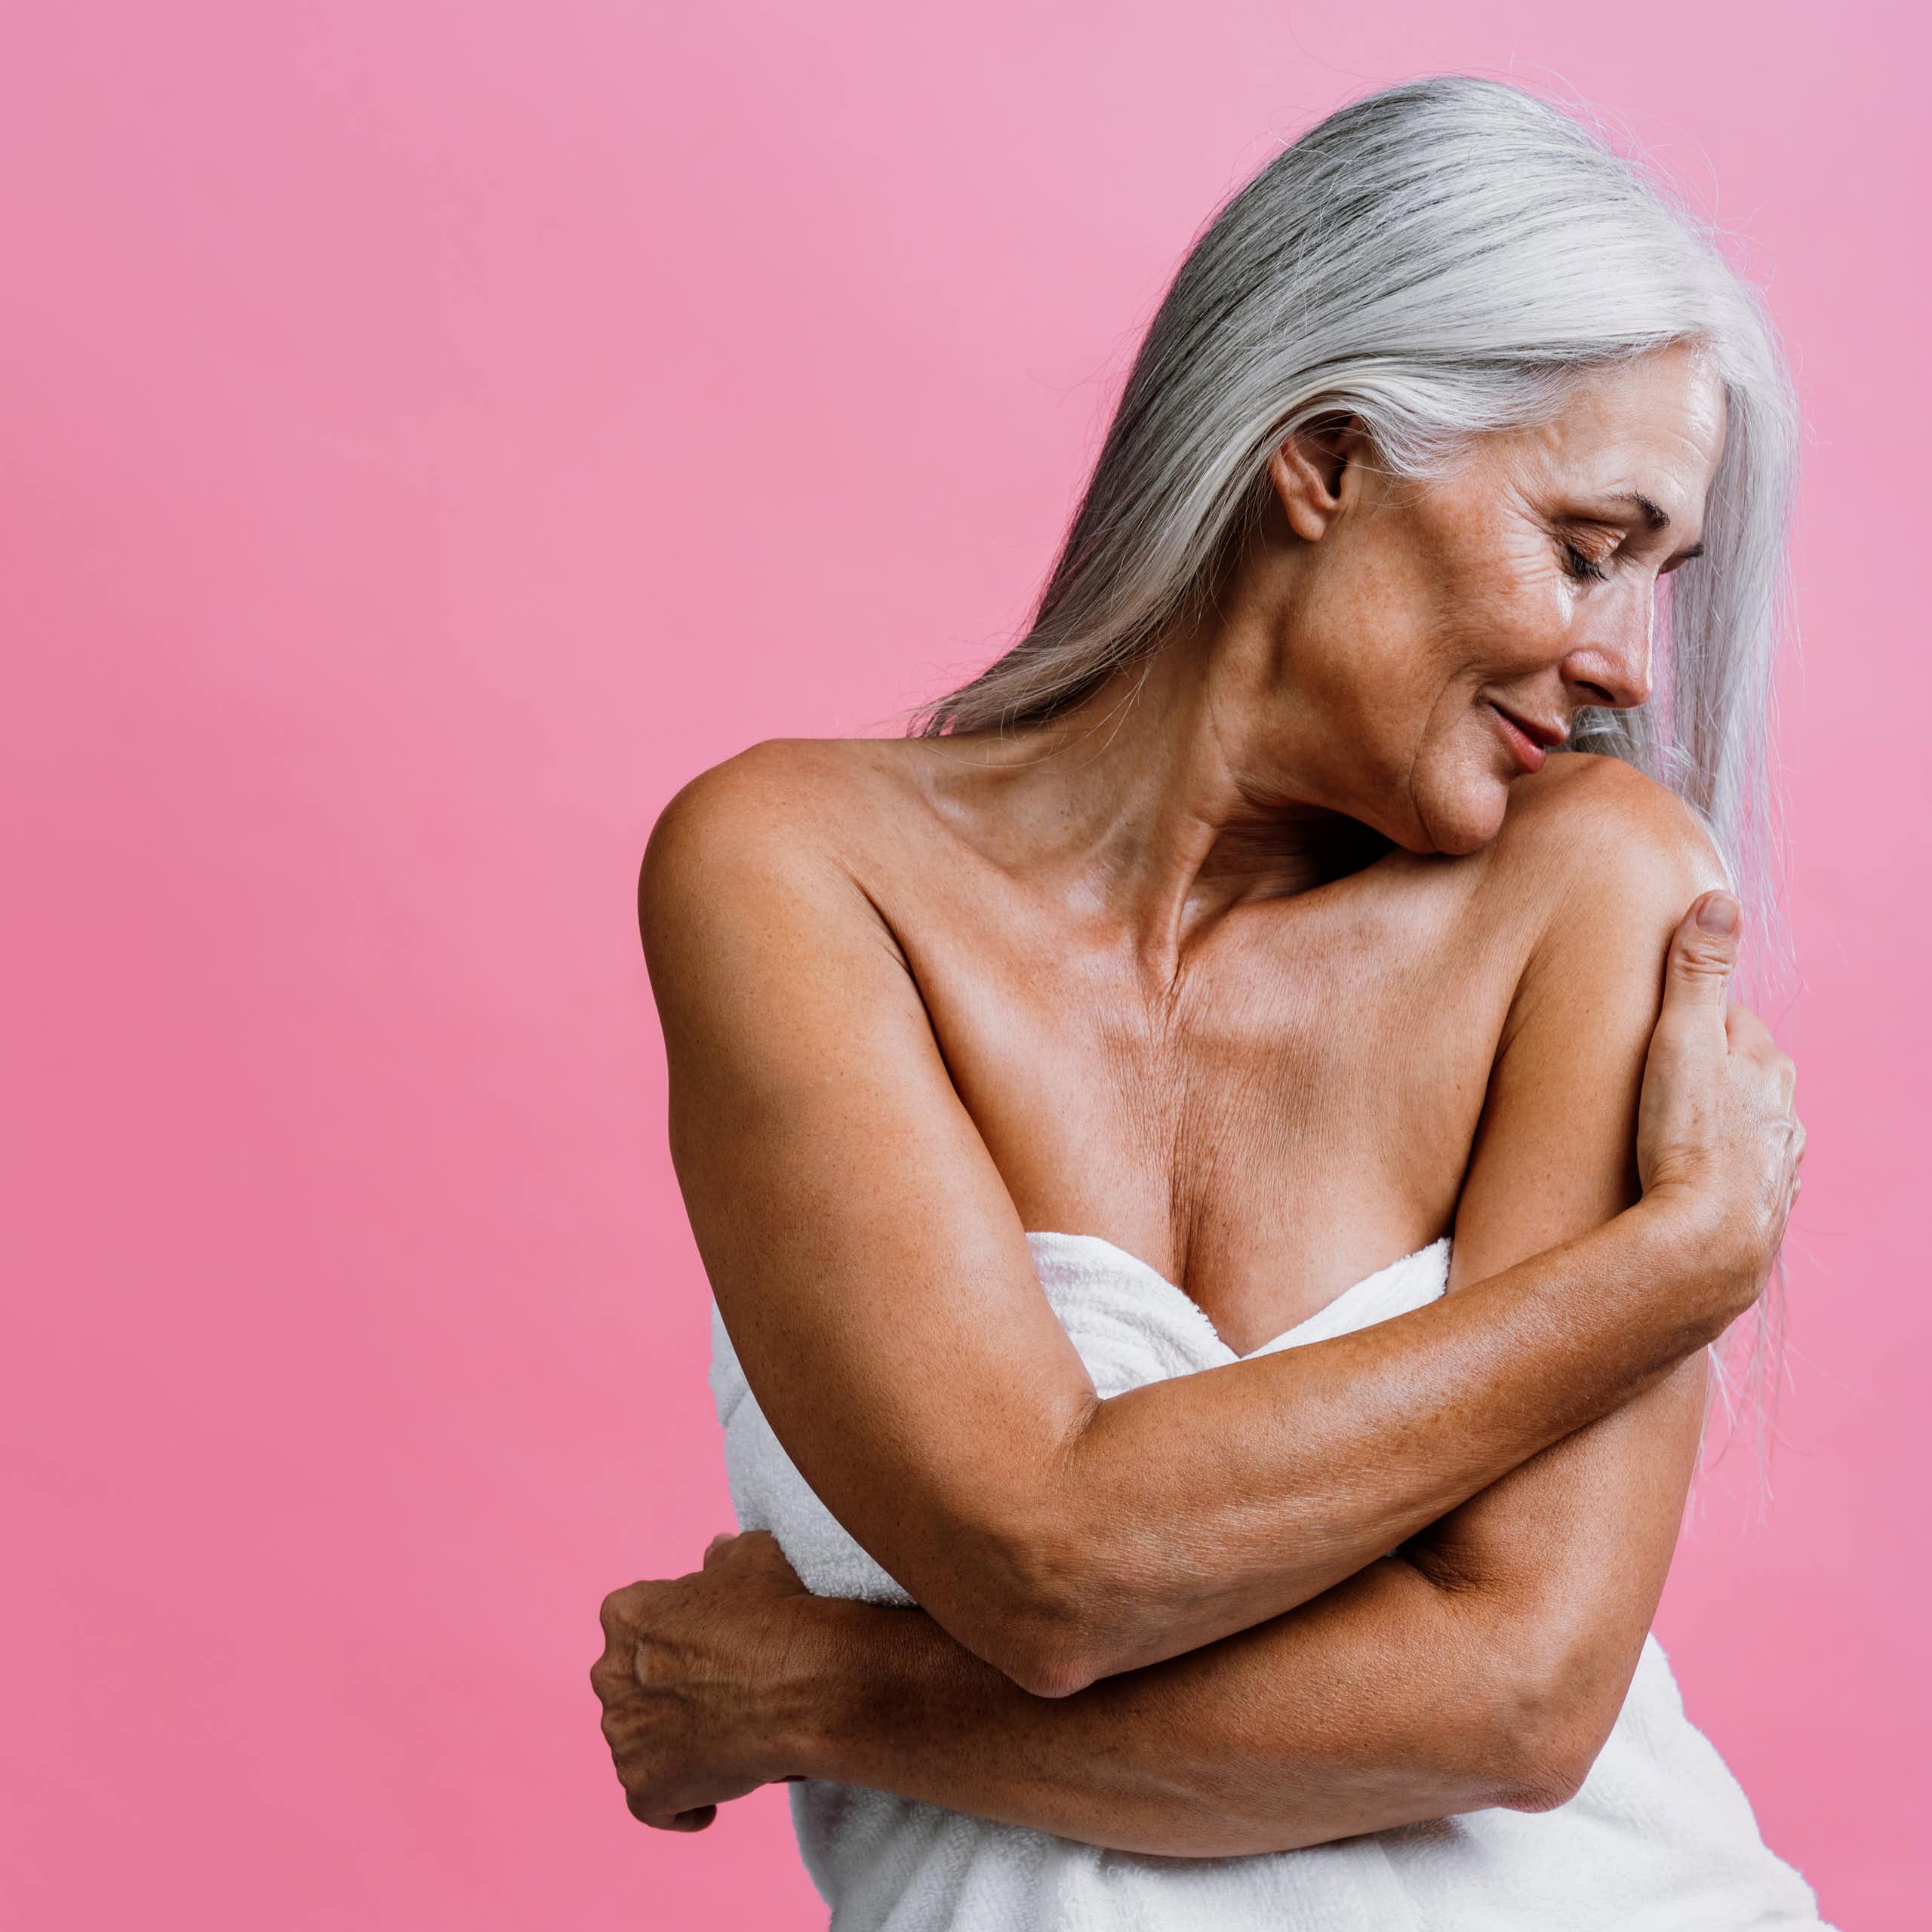 Menopausia: hábitos y tratamientos para potenciar la sexualidad